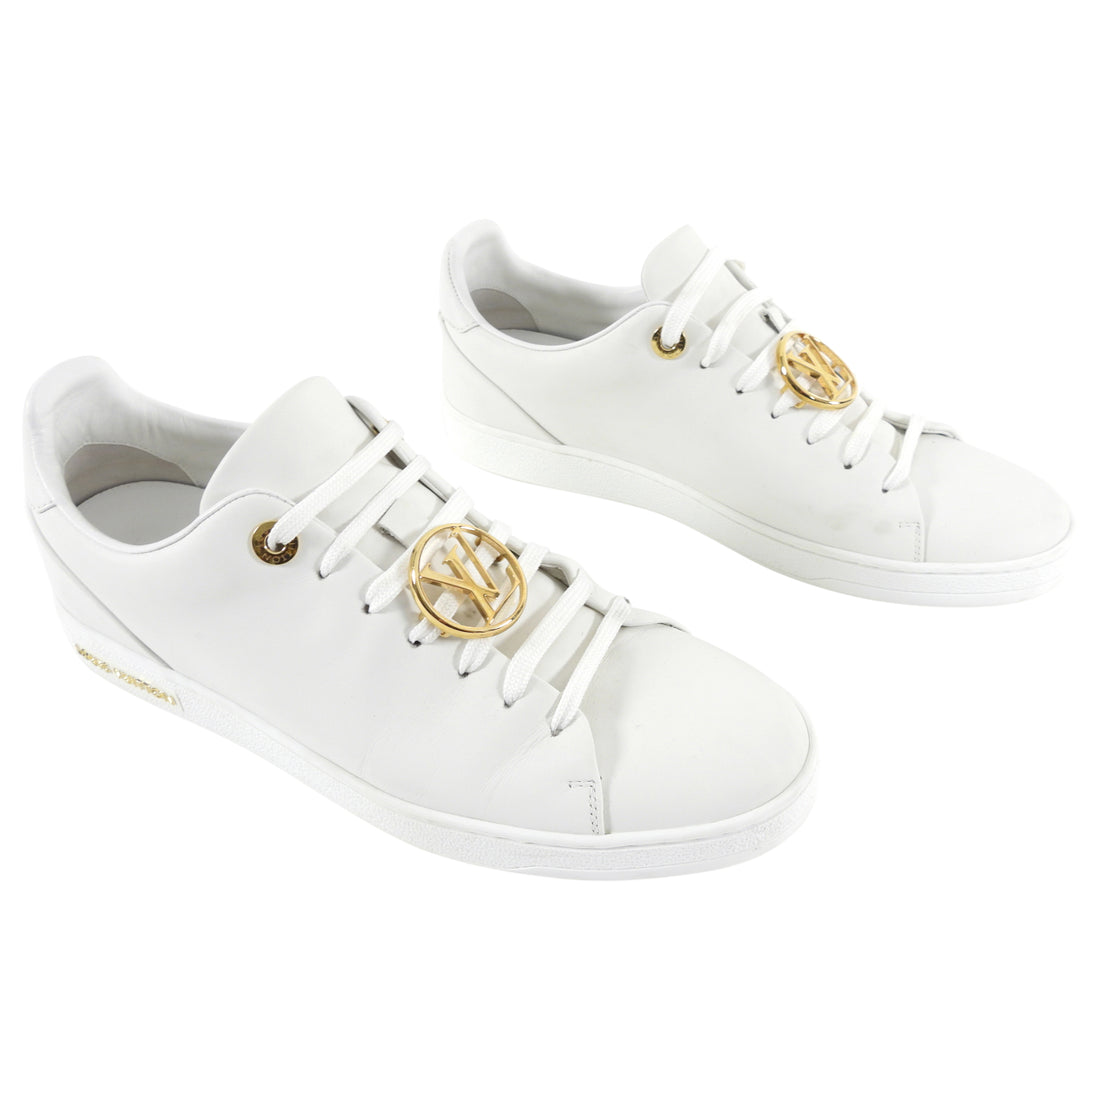 Louis Vuitton LV Resort Sneaker White. Size 08.0